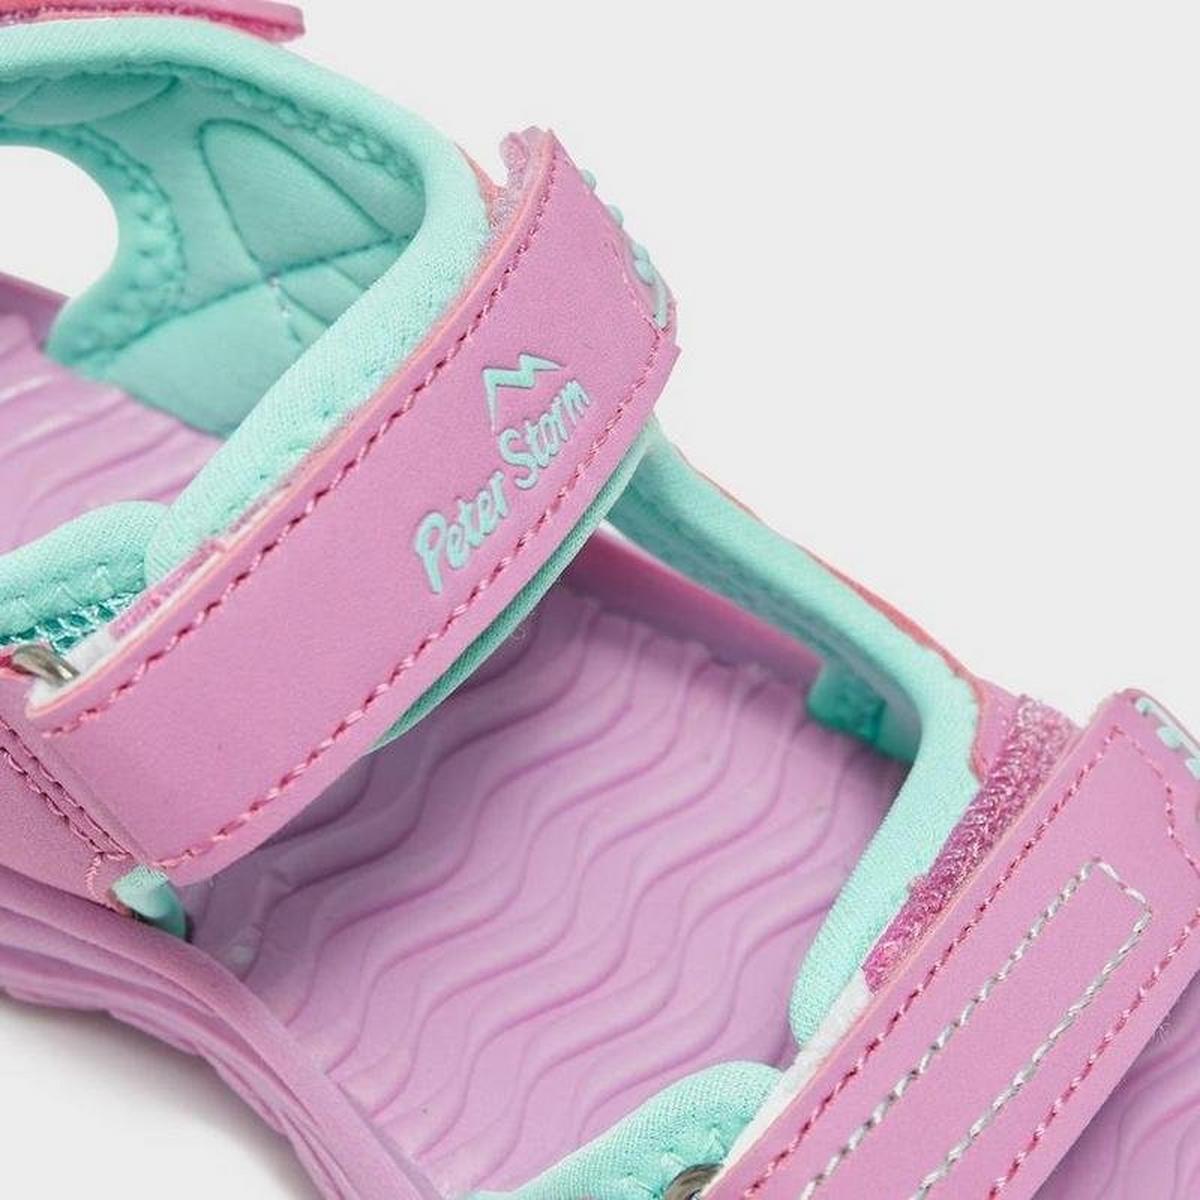 Peter Storm Kids’ Breakwater Sandals - Pink